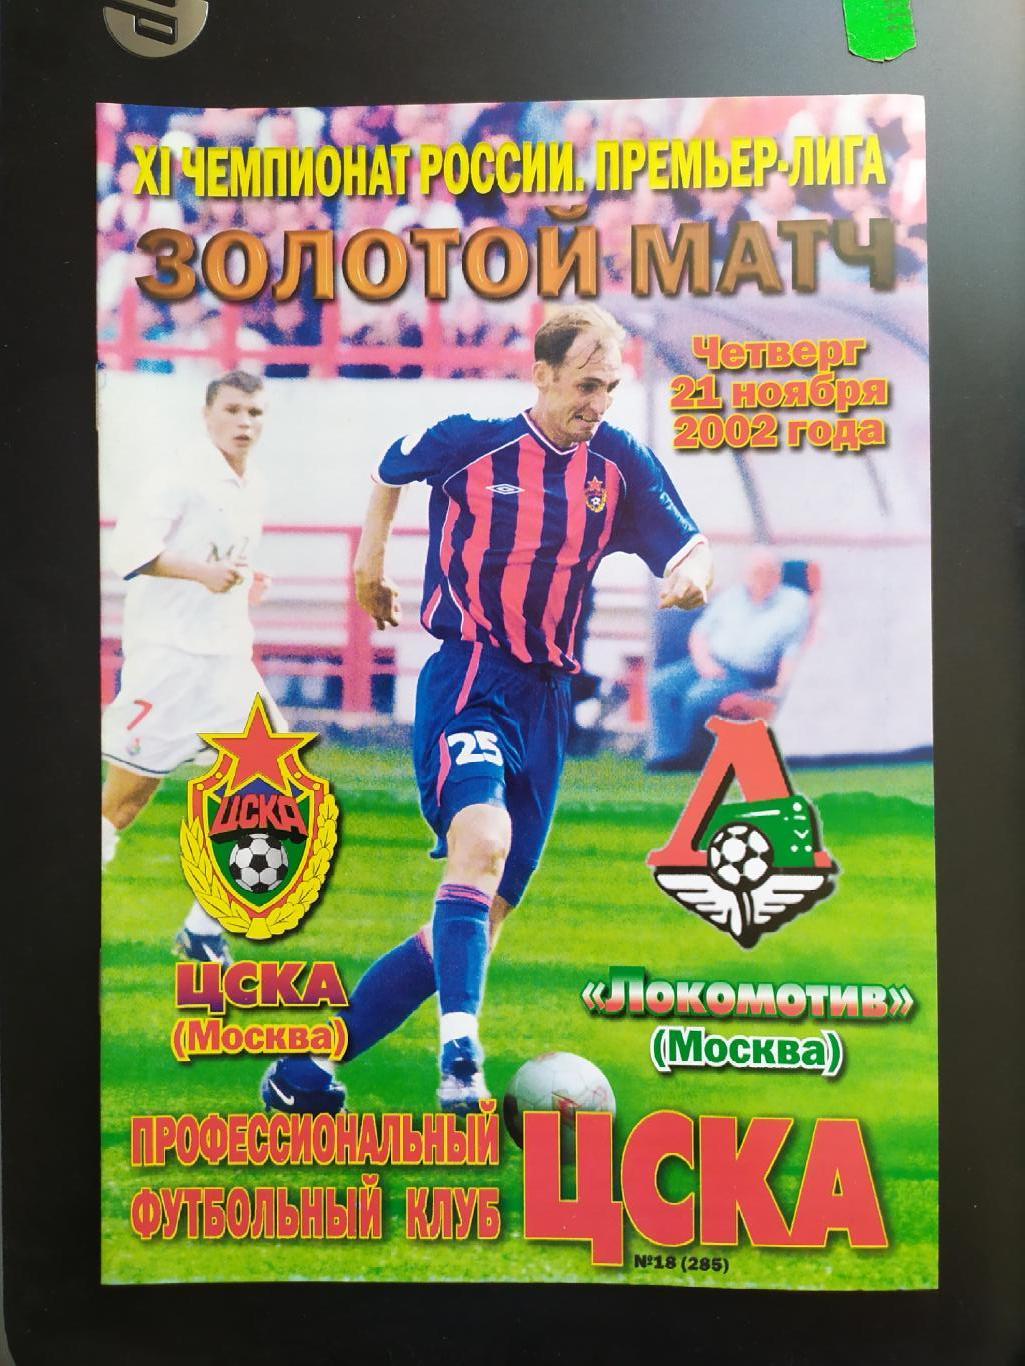 ЦСКА-Локомотив Москва 21.11.2002 золотой матч